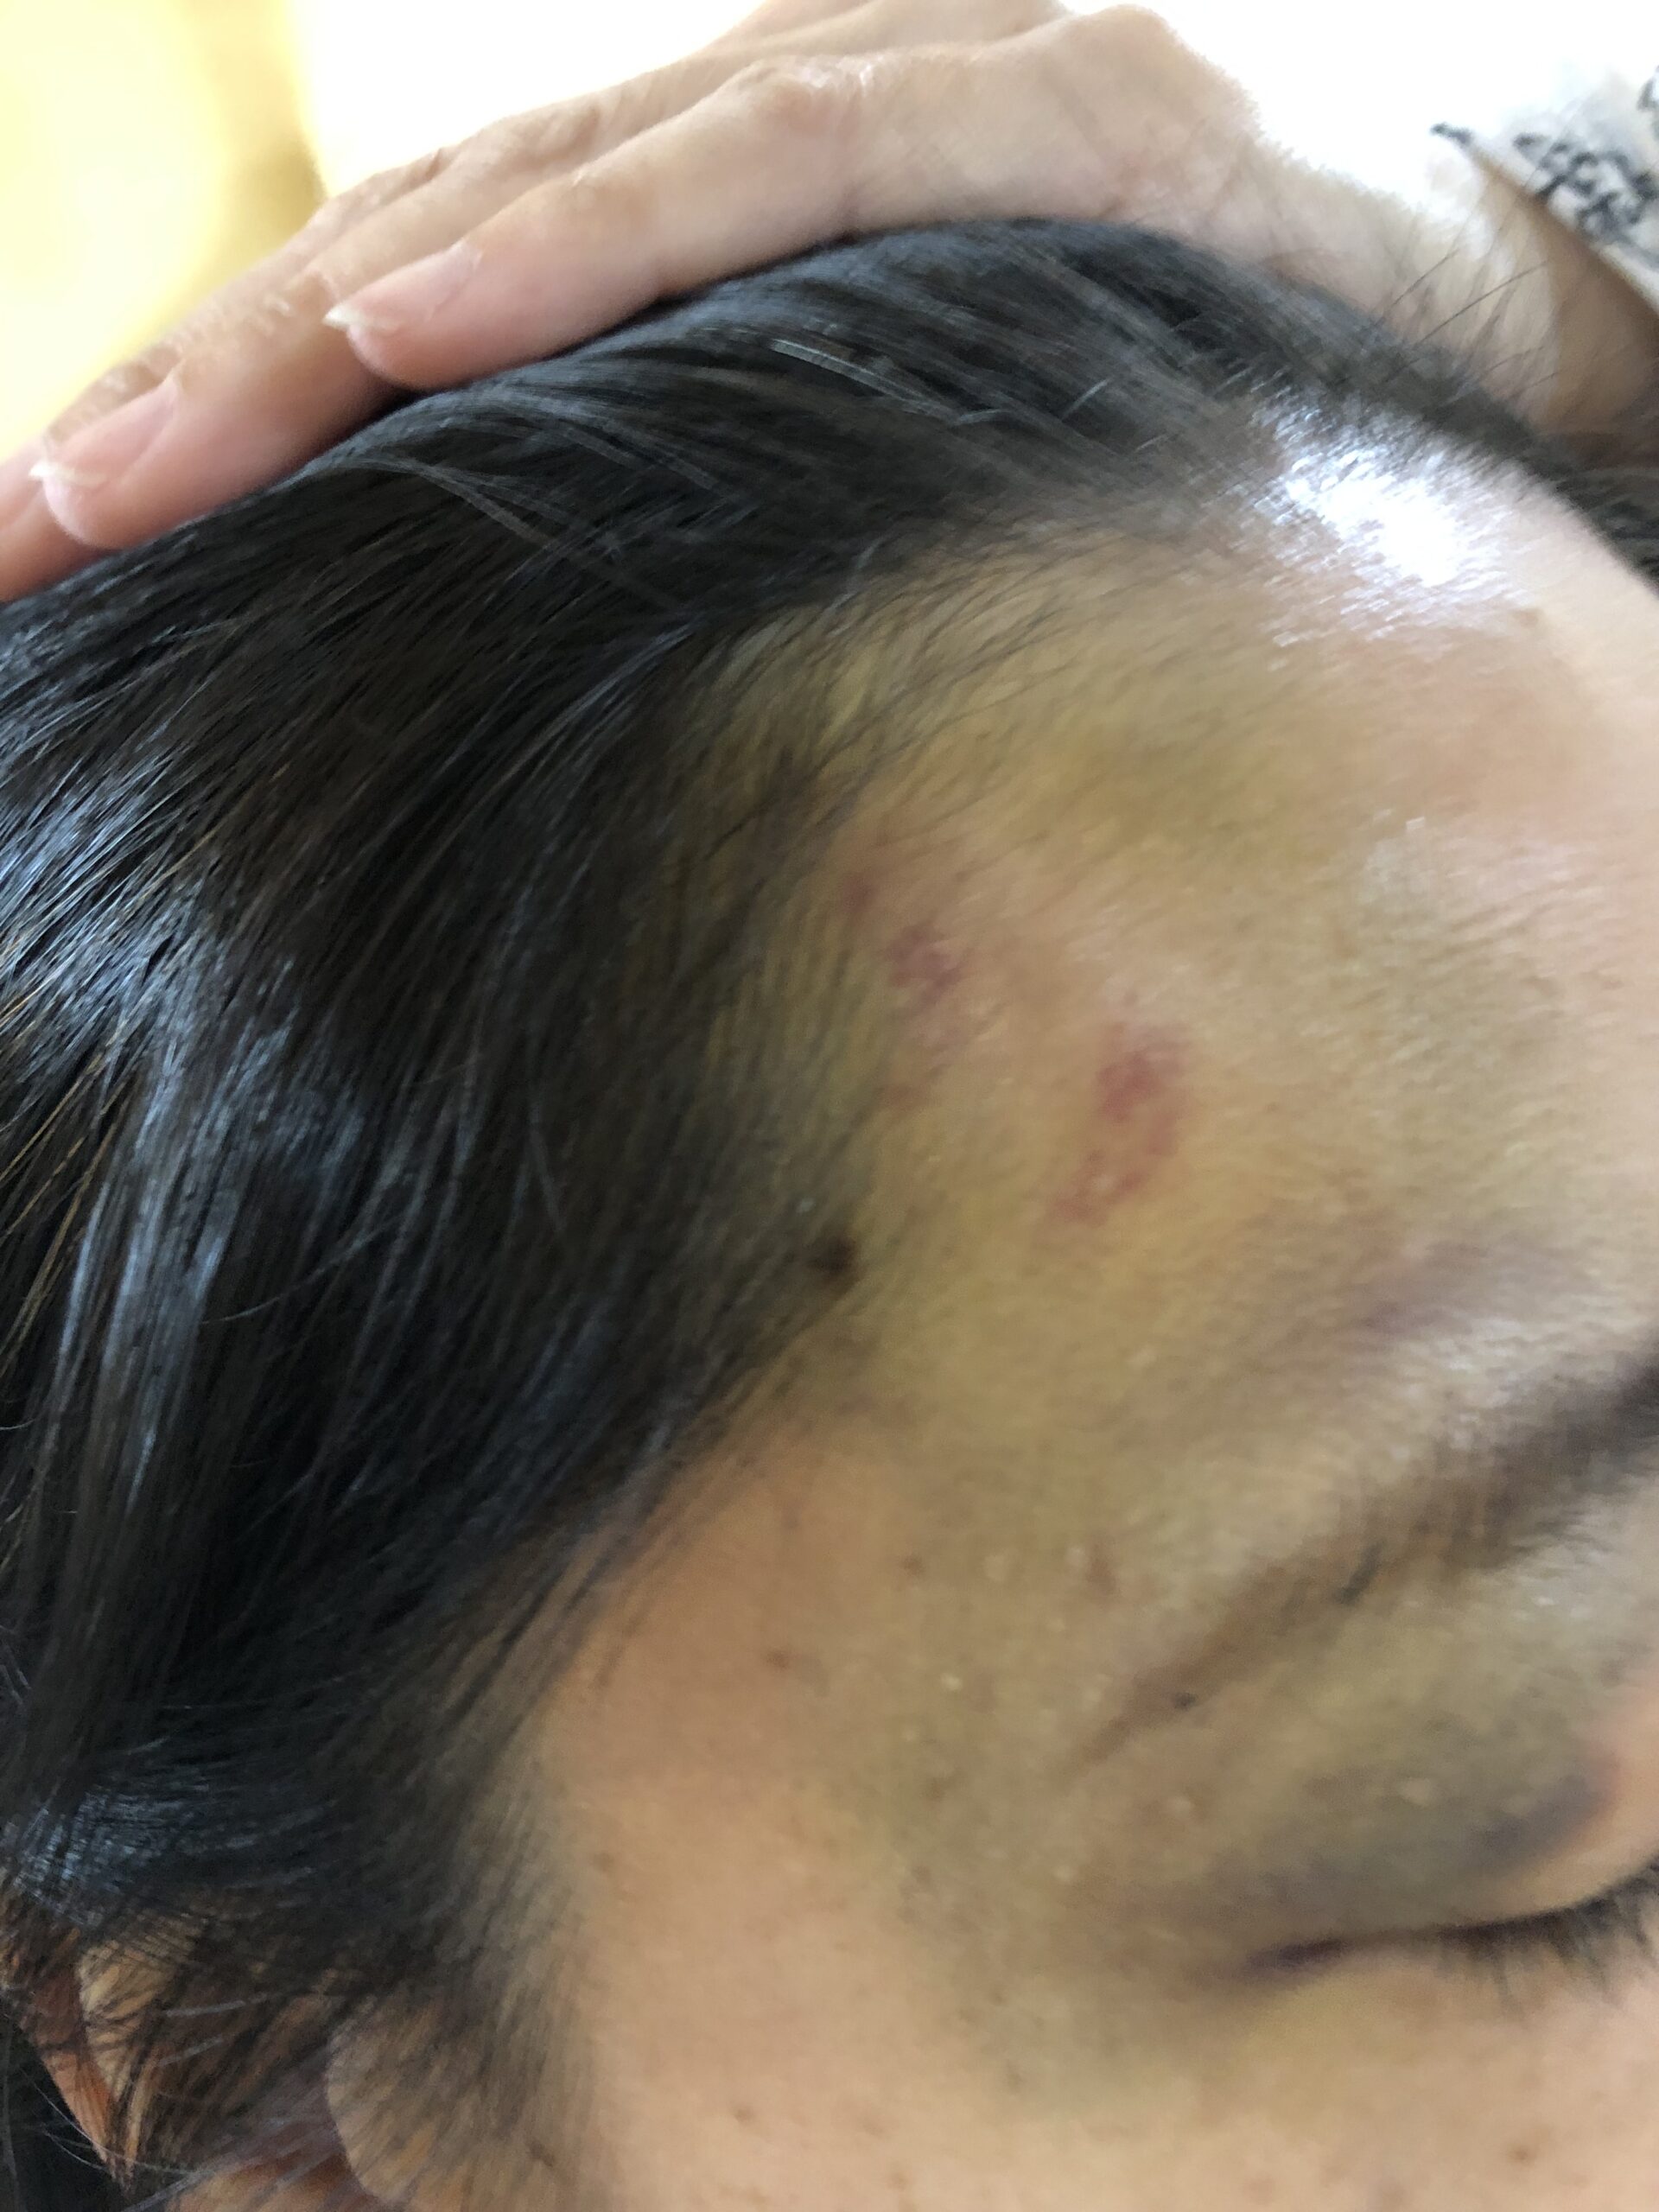 40歳代女性、酔っぱらって転倒し顔面を打撲してコウケントー光線治療